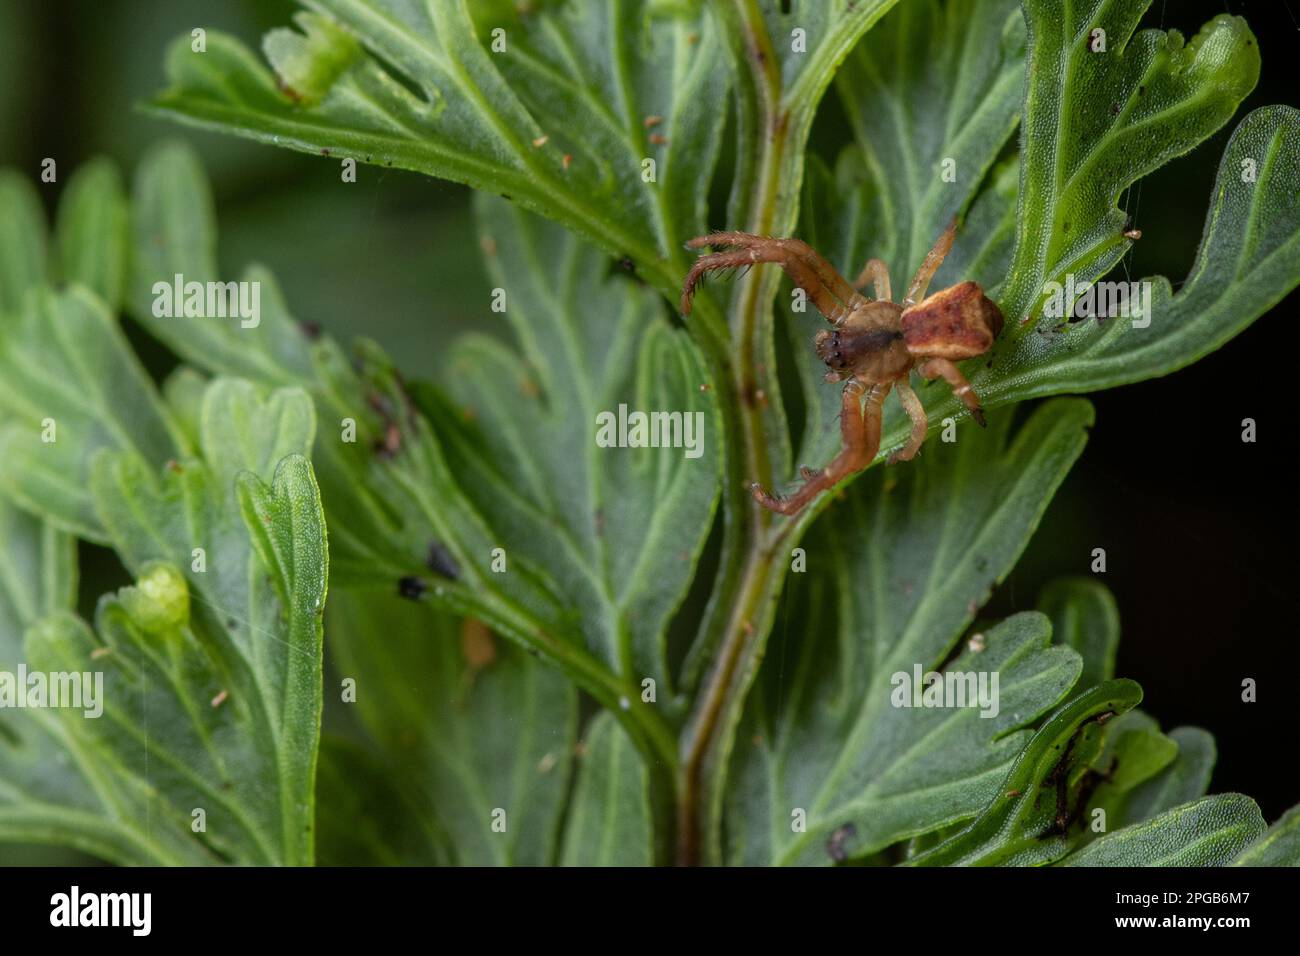 Krabbenspinne mit quadratischem Ende, Sidymella angularis, eine Spinnenart, die in Aotearoa Neuseeland endemisch ist - diese Spinne stammt von Stewart Island im Süden. Stockfoto